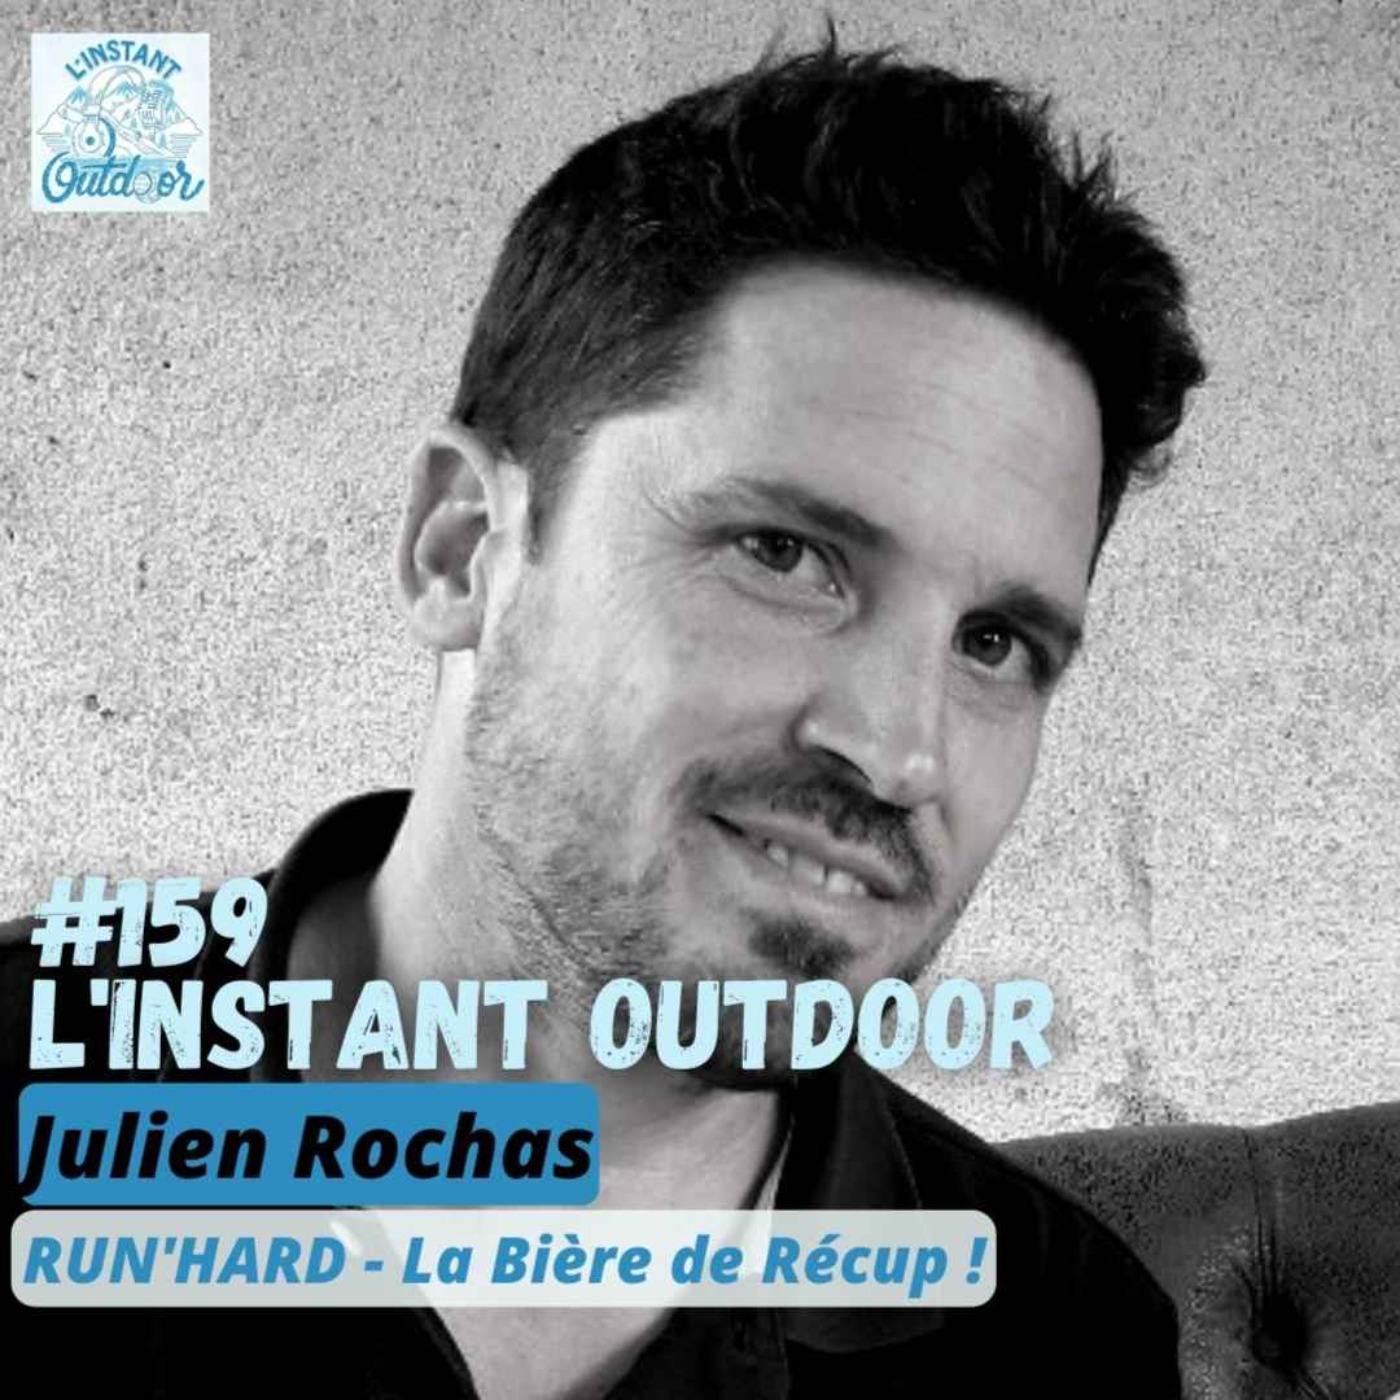 Julien Rochas - Run'Hard La Bière de Récup